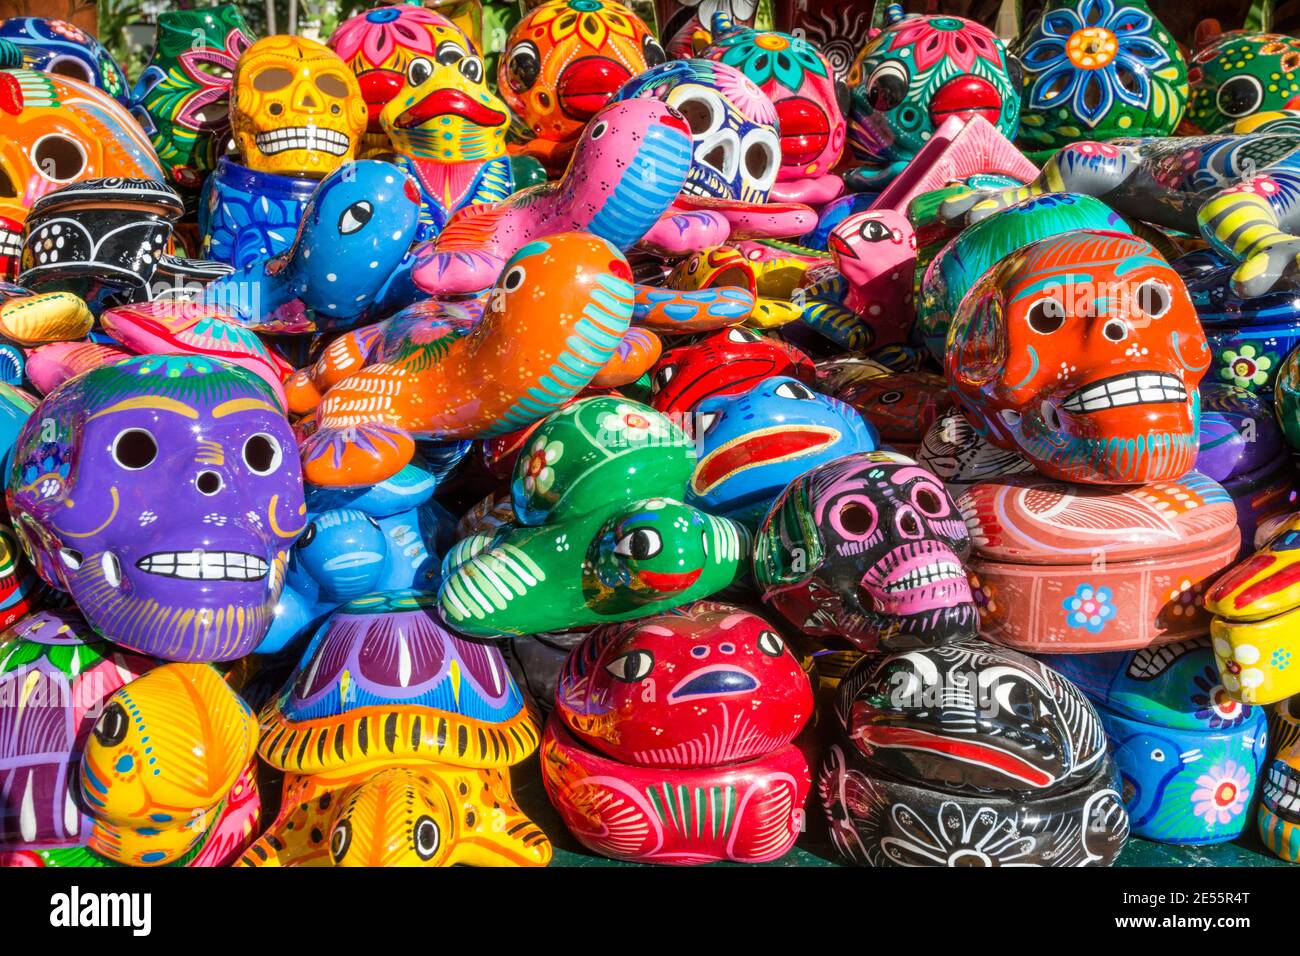 Des souvenirs colorés en céramique peints à la main pour le crâne et la figure animale sont en vente à l'hôtel Velas Vallarta, Puerto Vallarta, Mexique. Banque D'Images